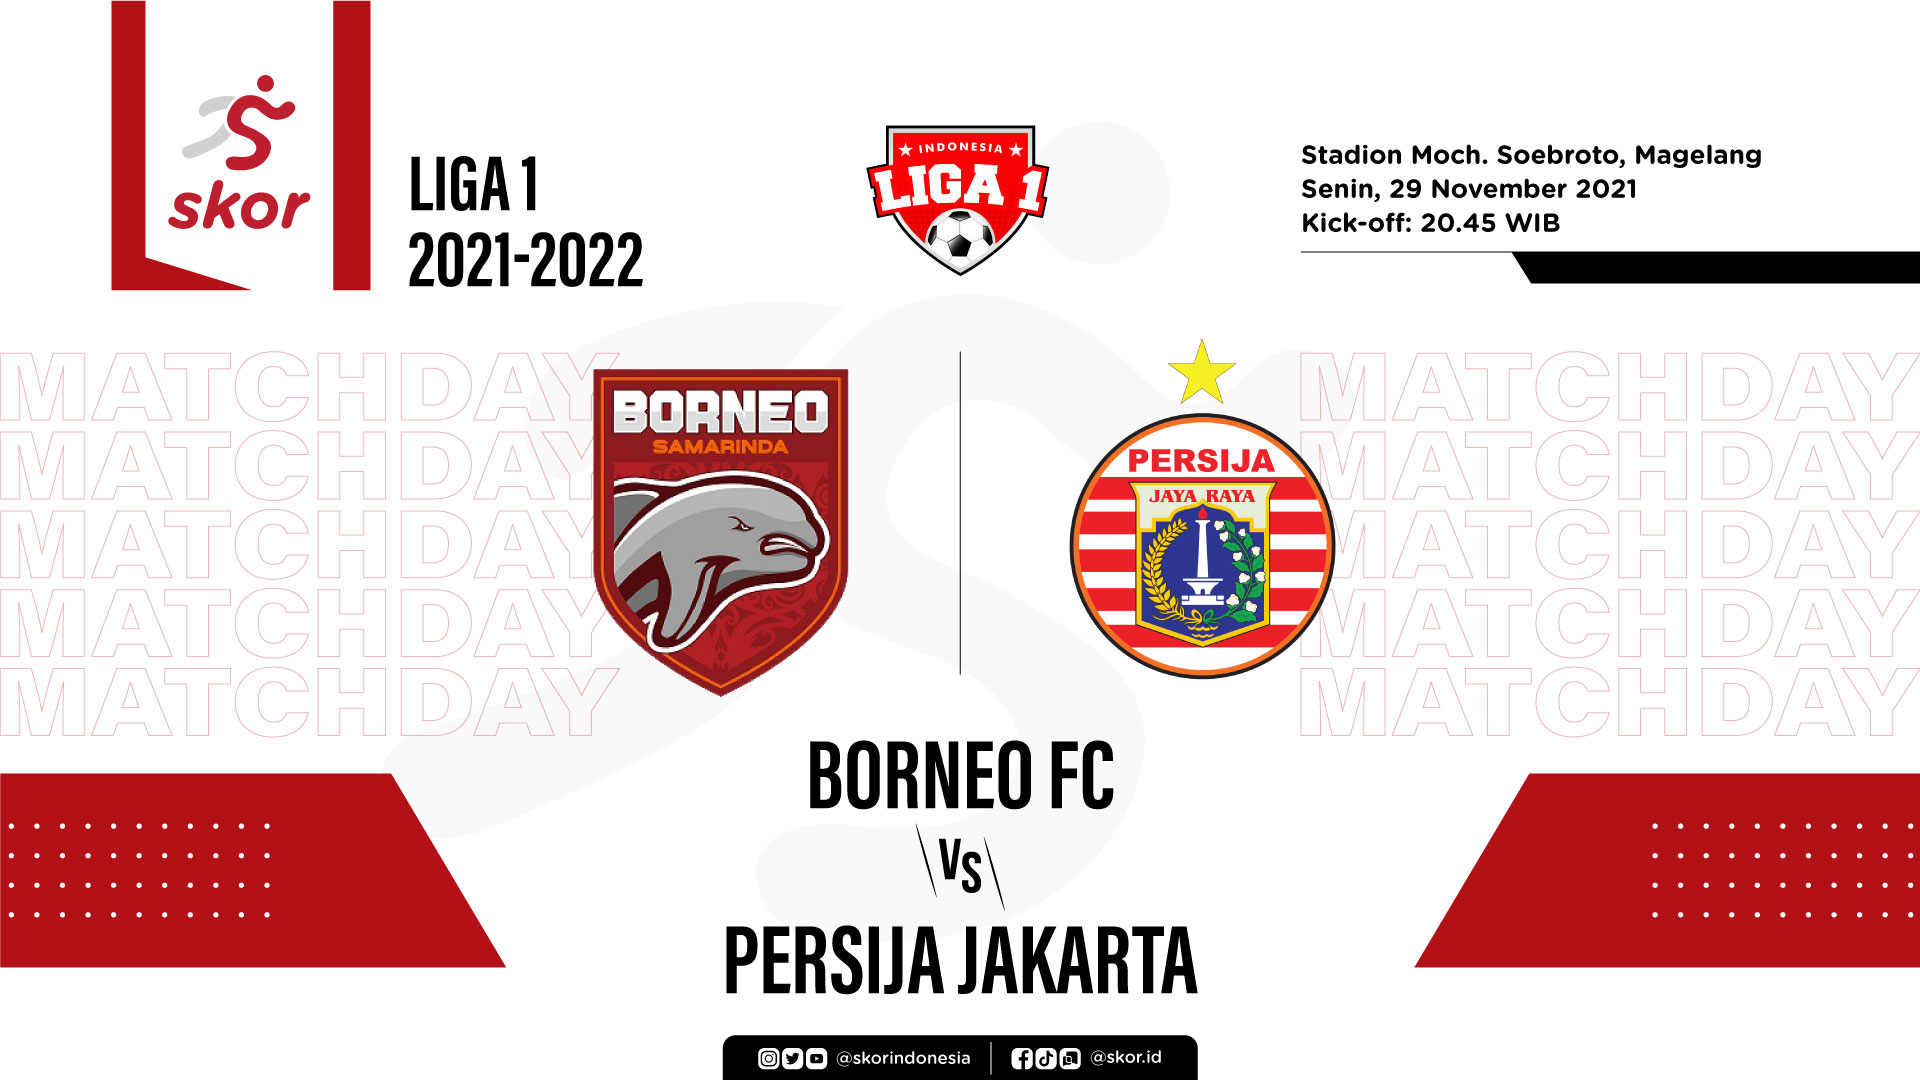 Breaking News: Lampu Stadion Mati, Laga Borneo FC vs Persija Terancam Gagal Digelar